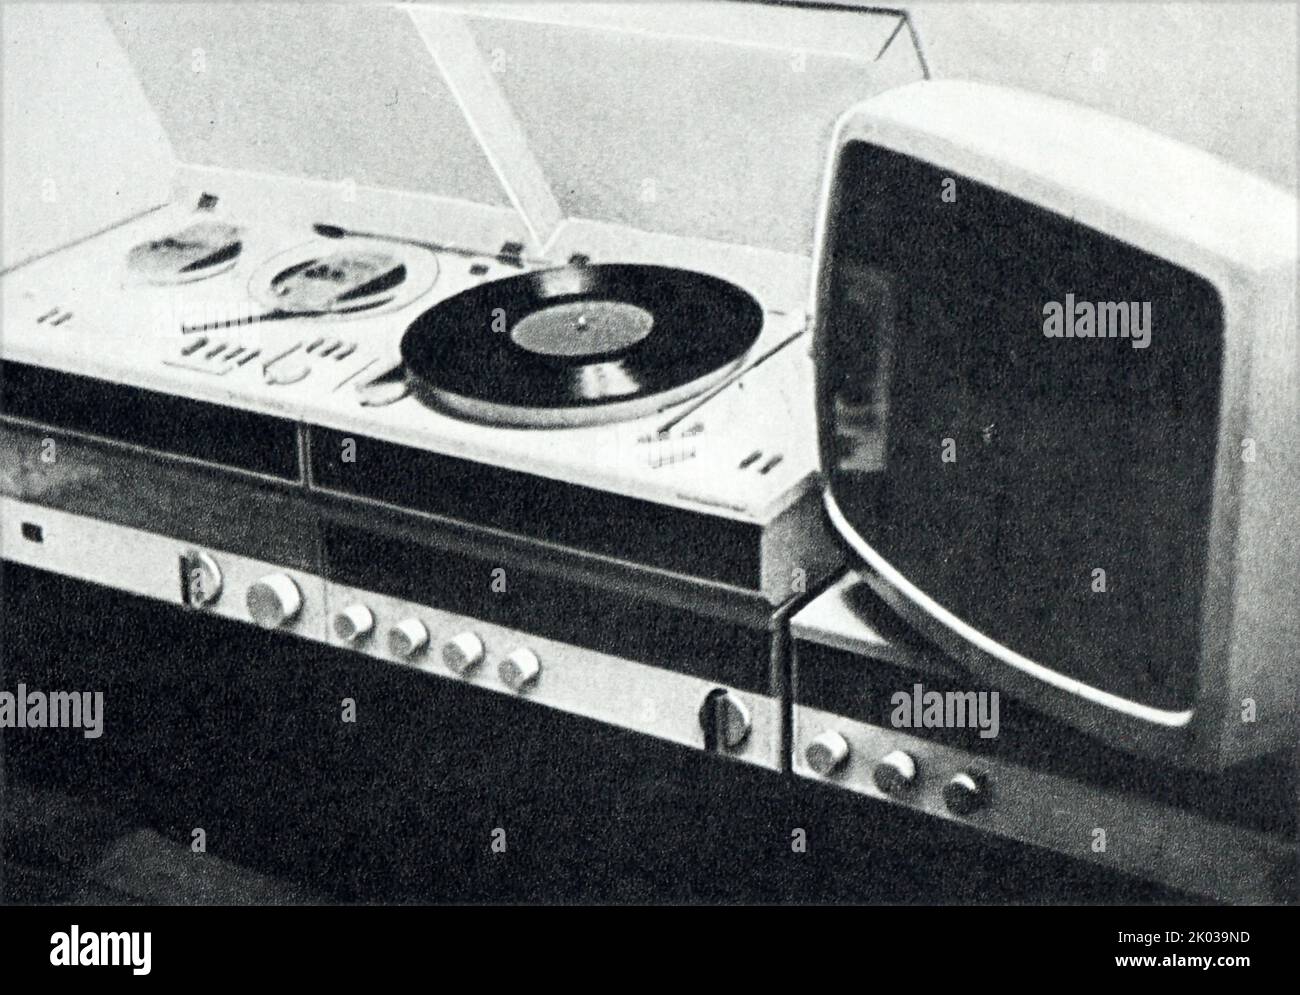 Elettronica di consumo in Russia Sovietica circa 1962: Televisione e lettore di dischi. Foto Stock